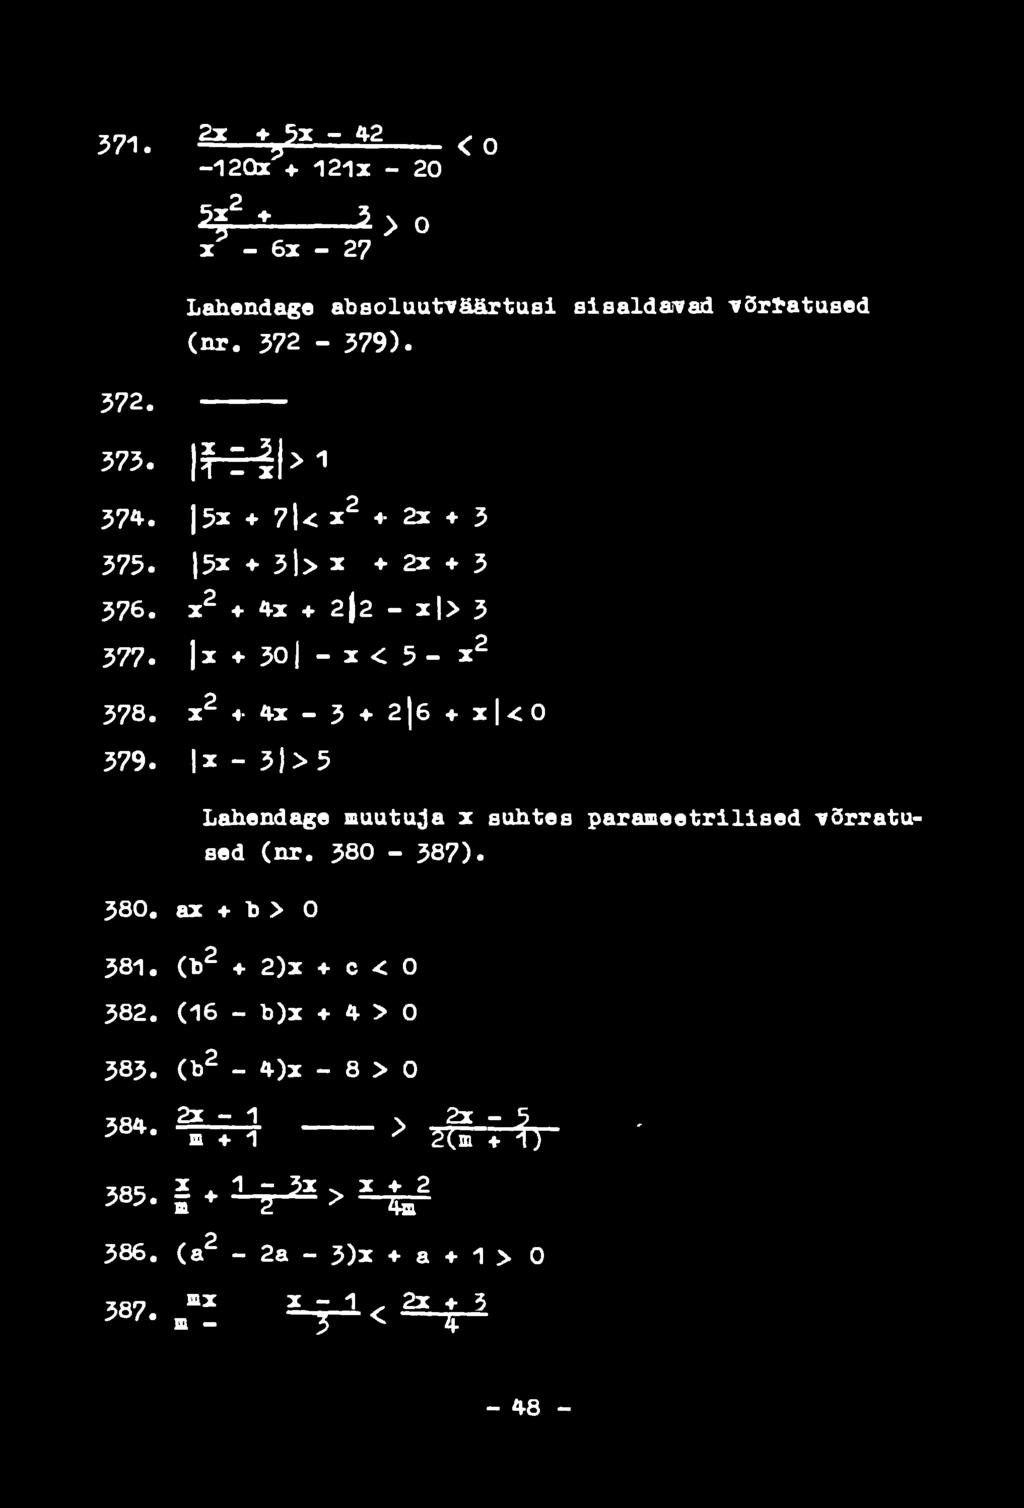 301 - x < 5 - X 2 X 2 4-4x - 3 2 j 6 4- X I < 0 X - 3)> 5 Lahendage muutuja x suhtes parameetrilised võrratused (nr. 380-387). 380. 381. 382.